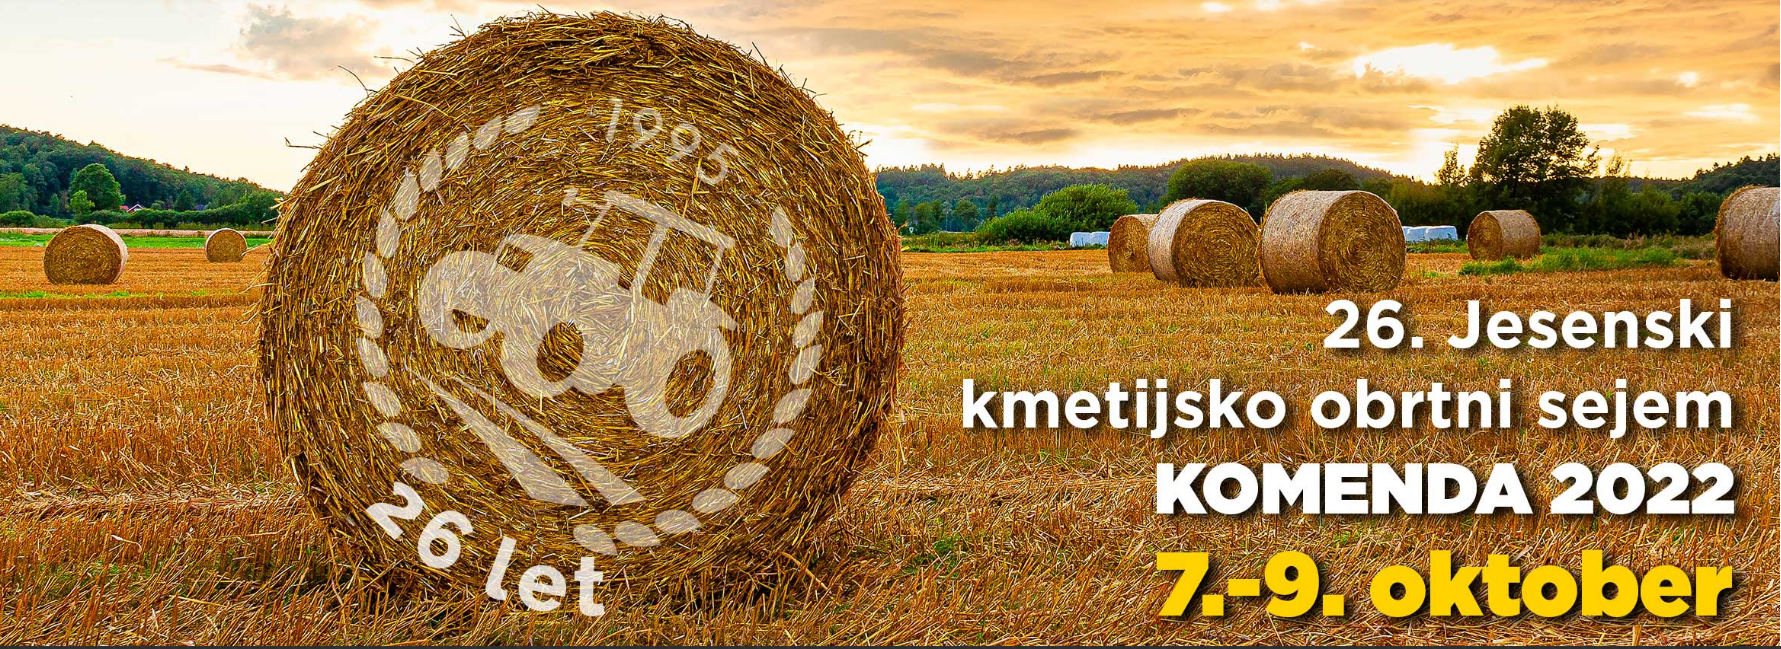 26. Jesenski kmetijsko obrtni sejem Komenda 2022